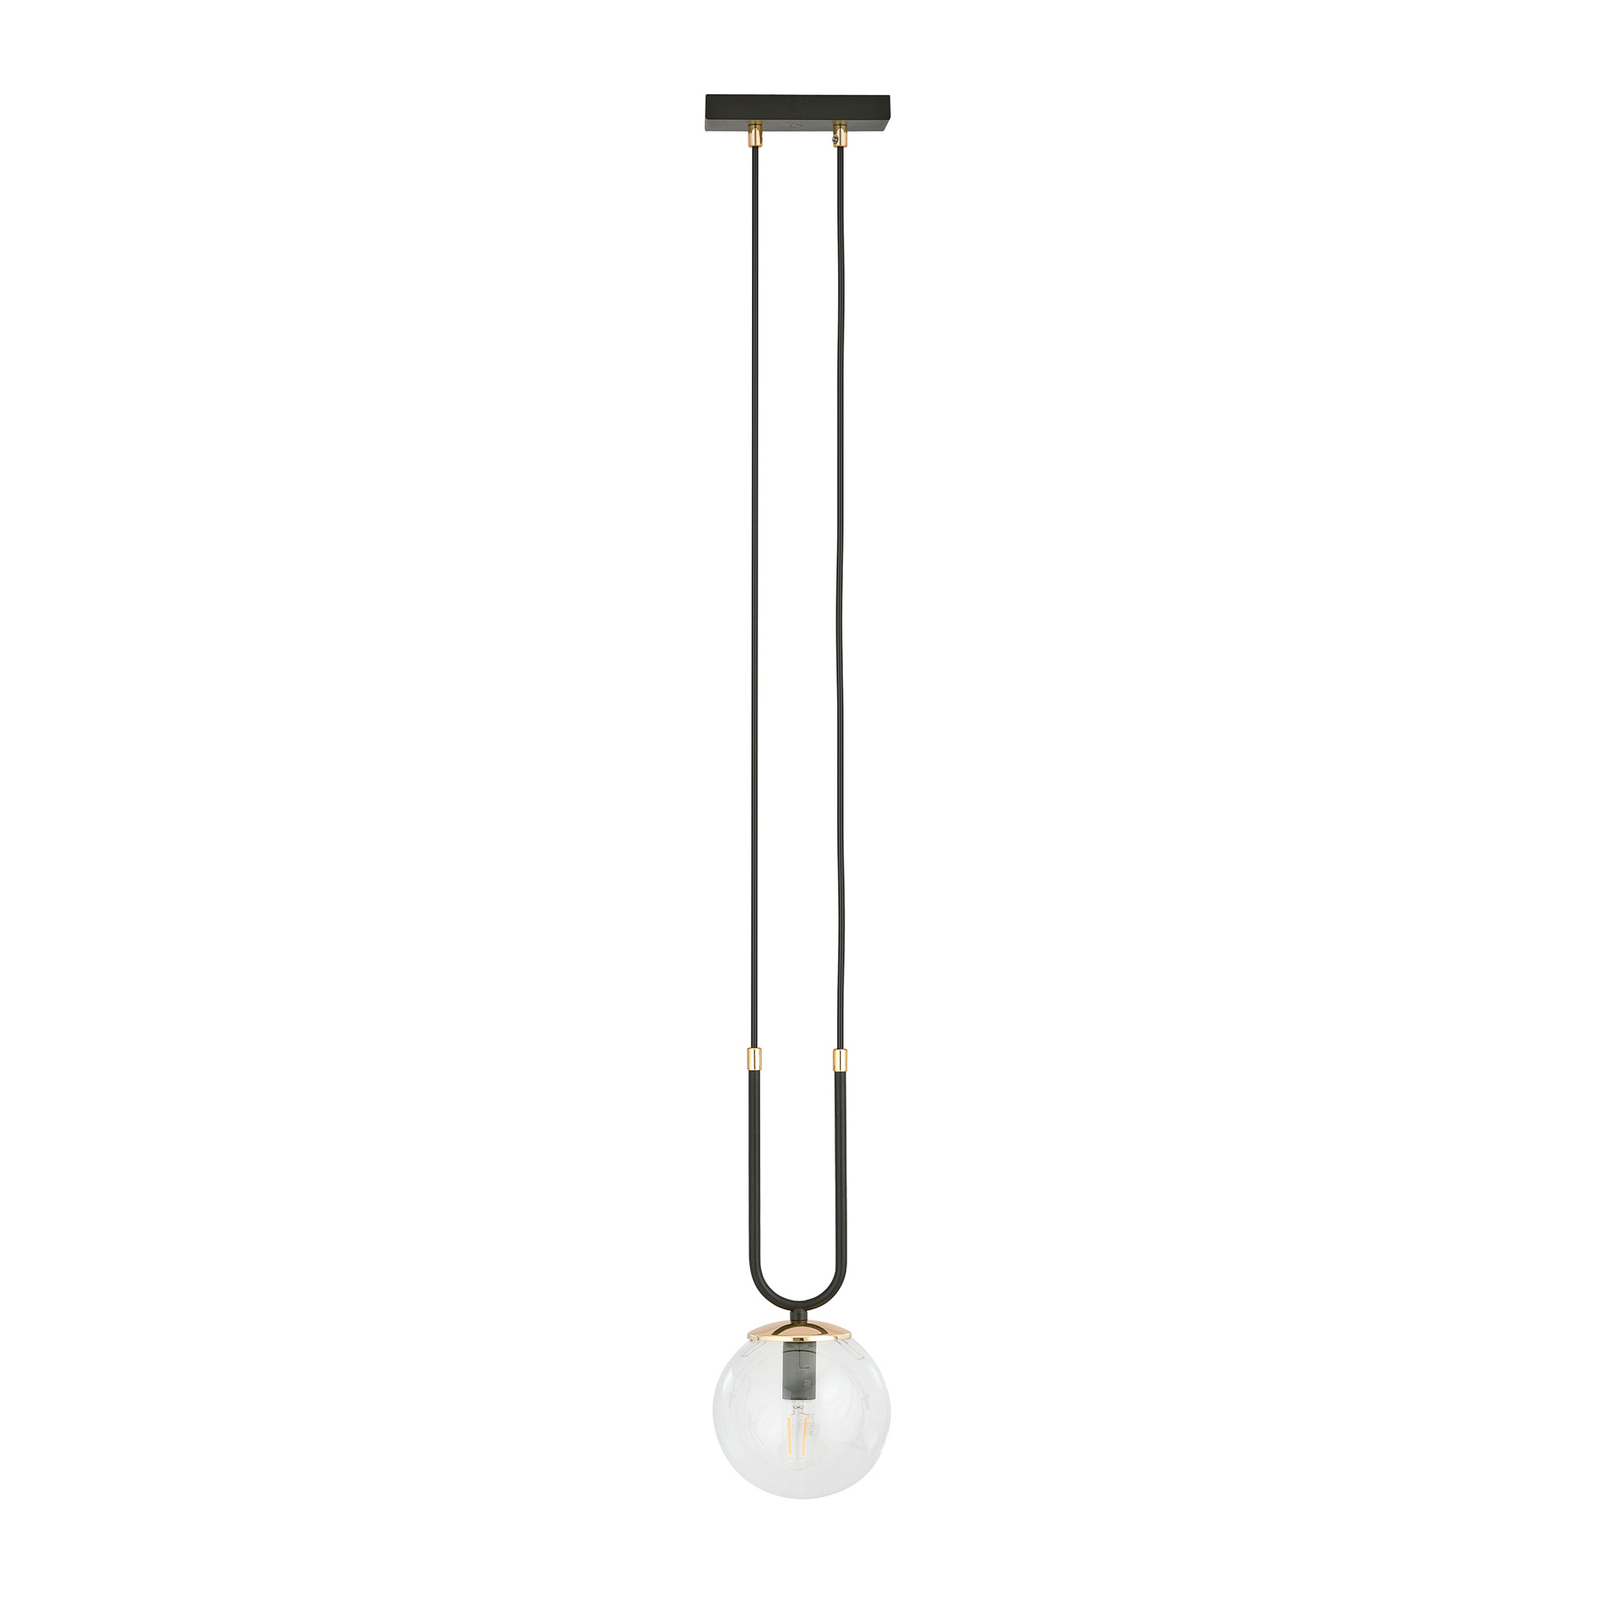 Hanglamp Glam, zwart/helder, 1-lamp